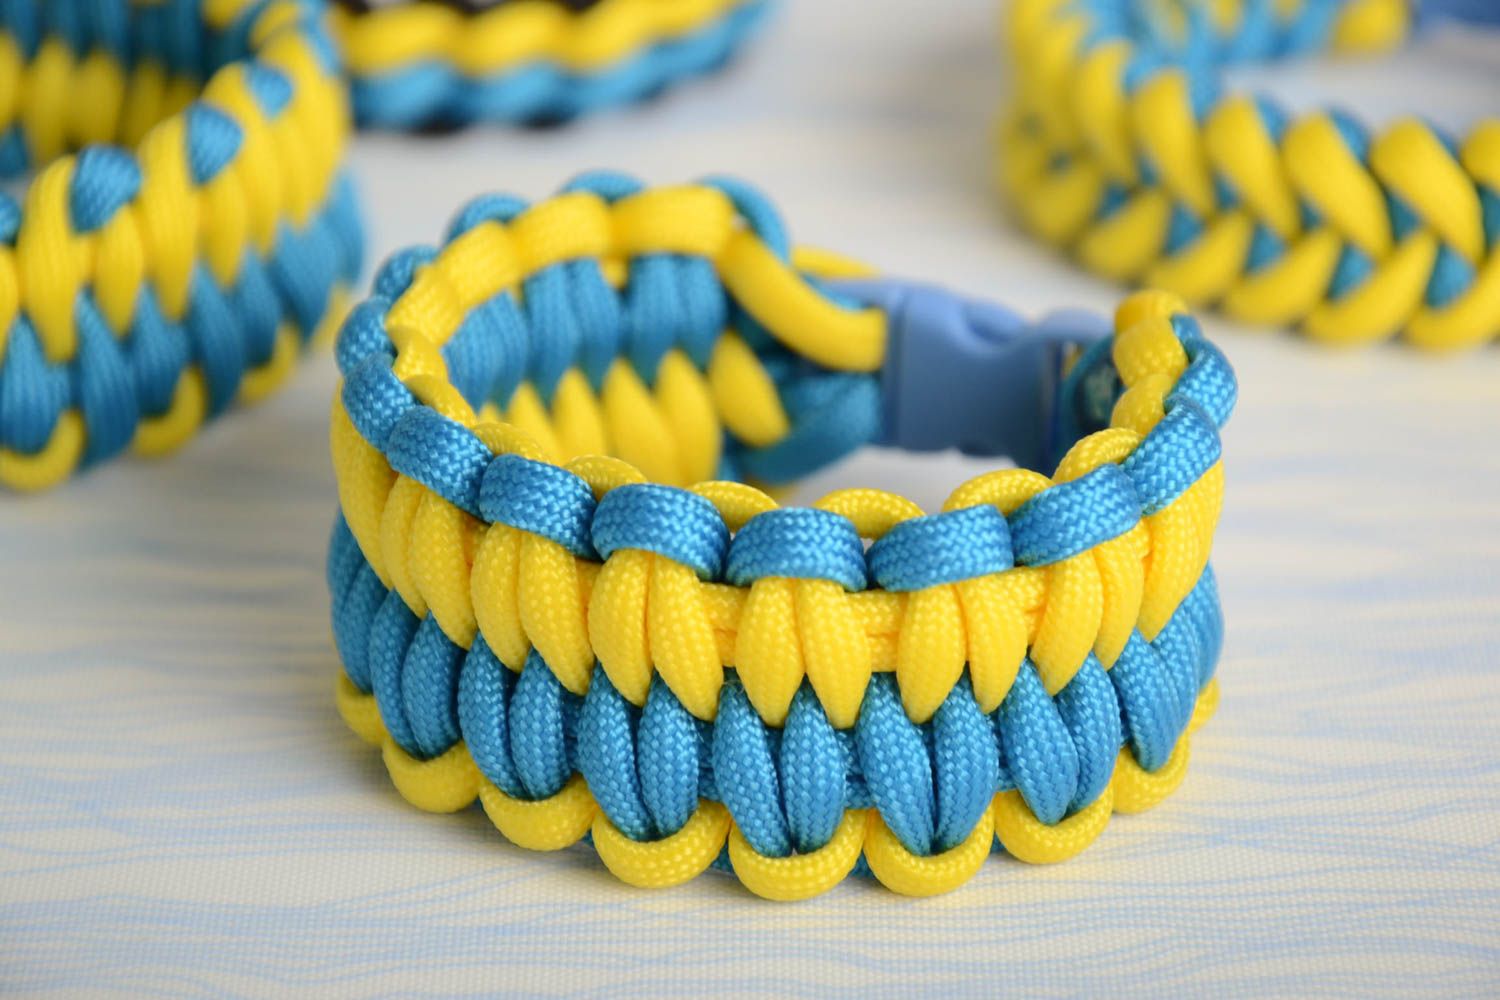 Браслет из шнурков паракорд плетеный желтый с голубым красивый модный хенд мэйд фото 1